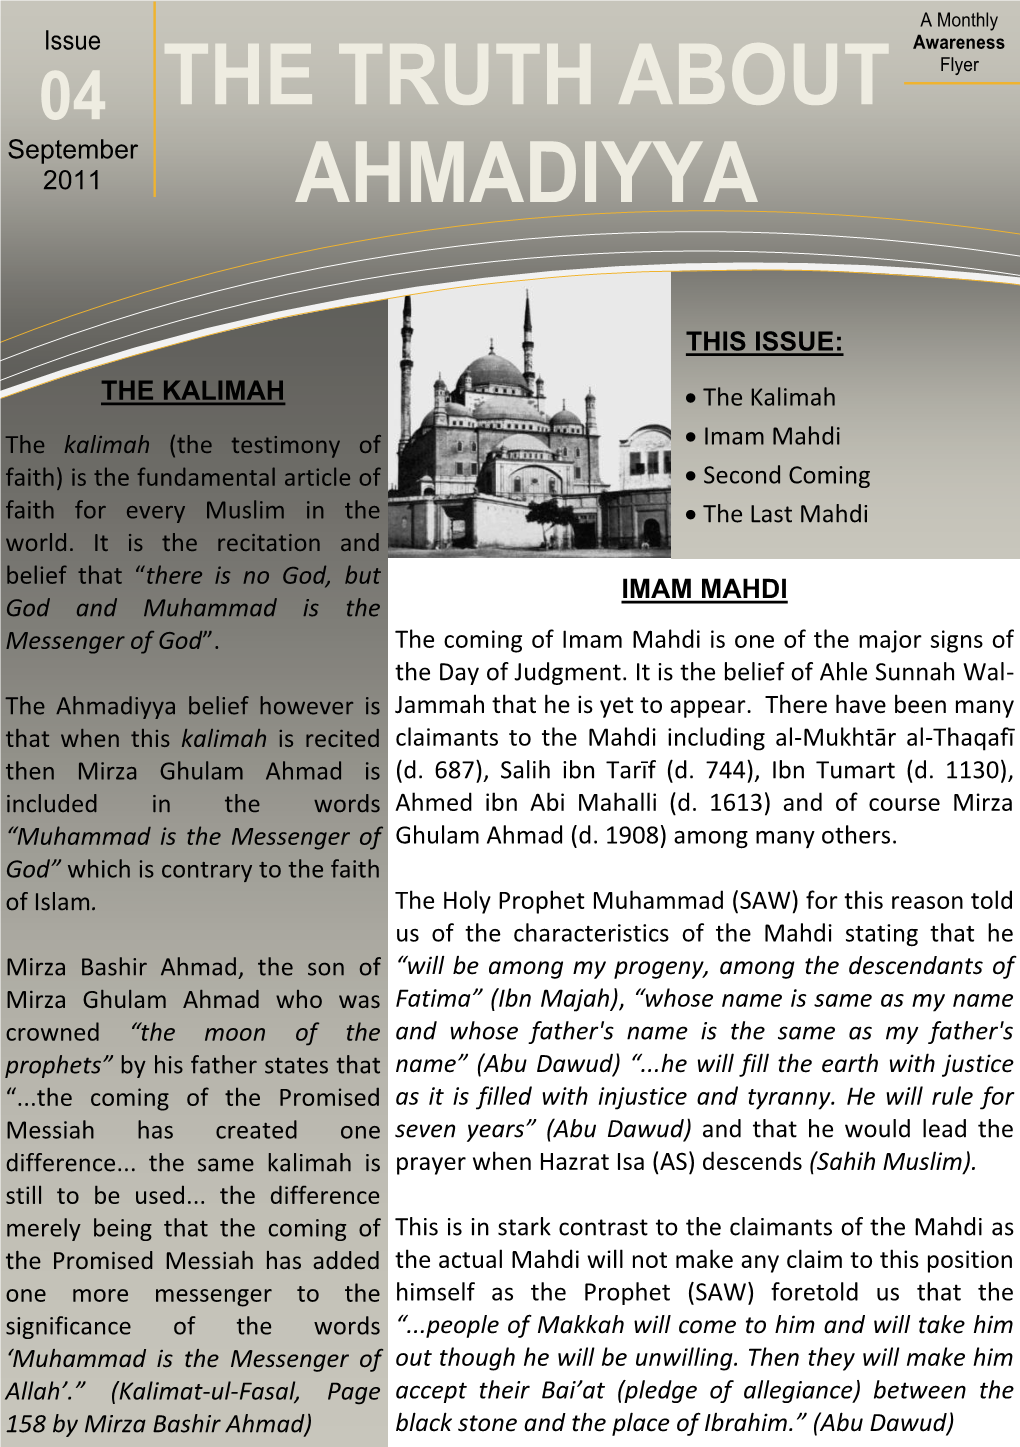 The Truth About Ahmadiyya